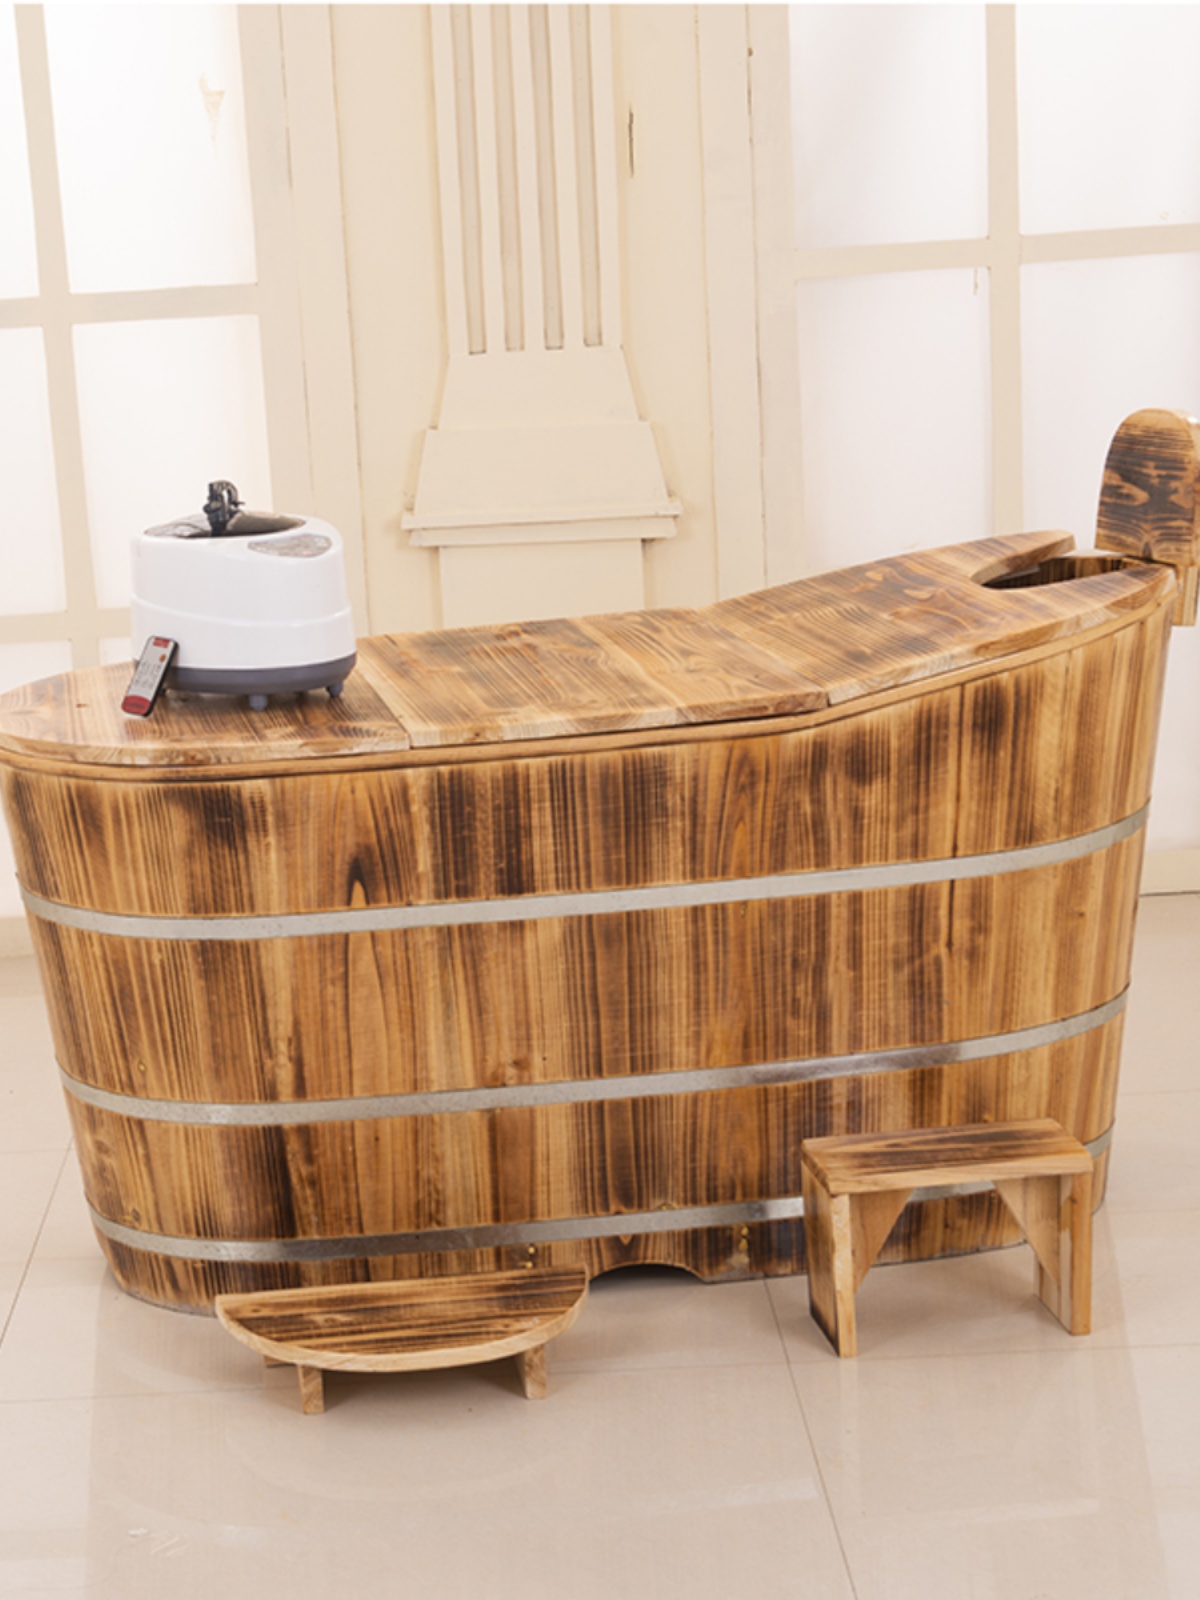 新品加厚木桶浴桶沐浴桶成人泡澡桶汗蒸熏蒸桶浴缸浴盆实木质